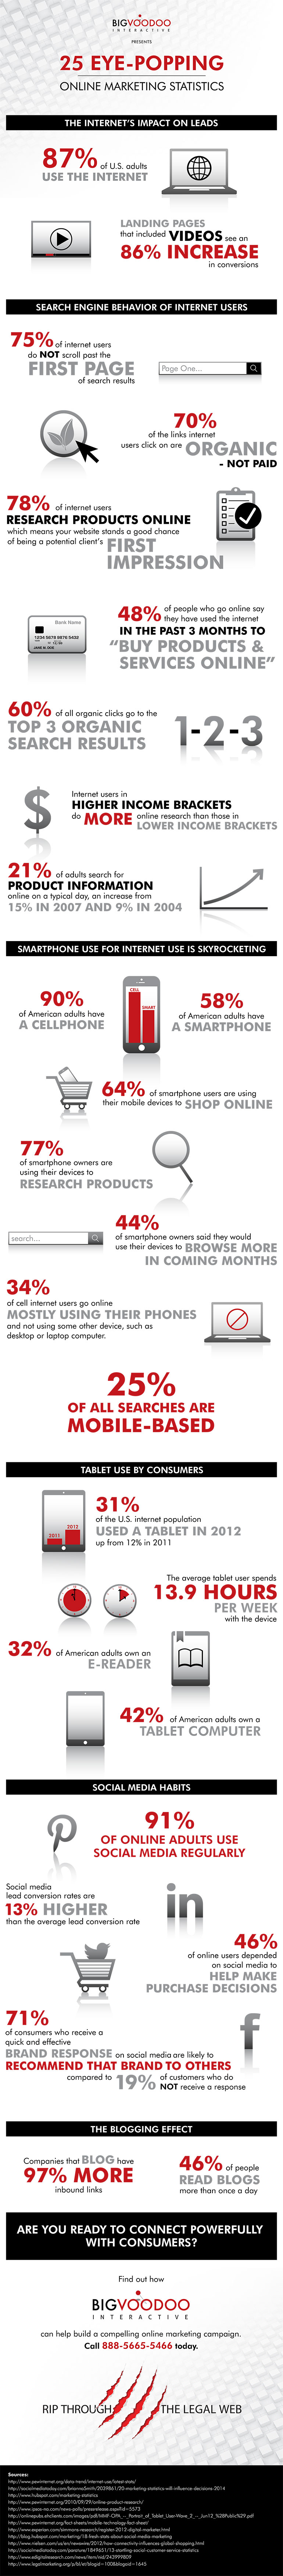 25 Eye-Popping Online Marketing Statistics